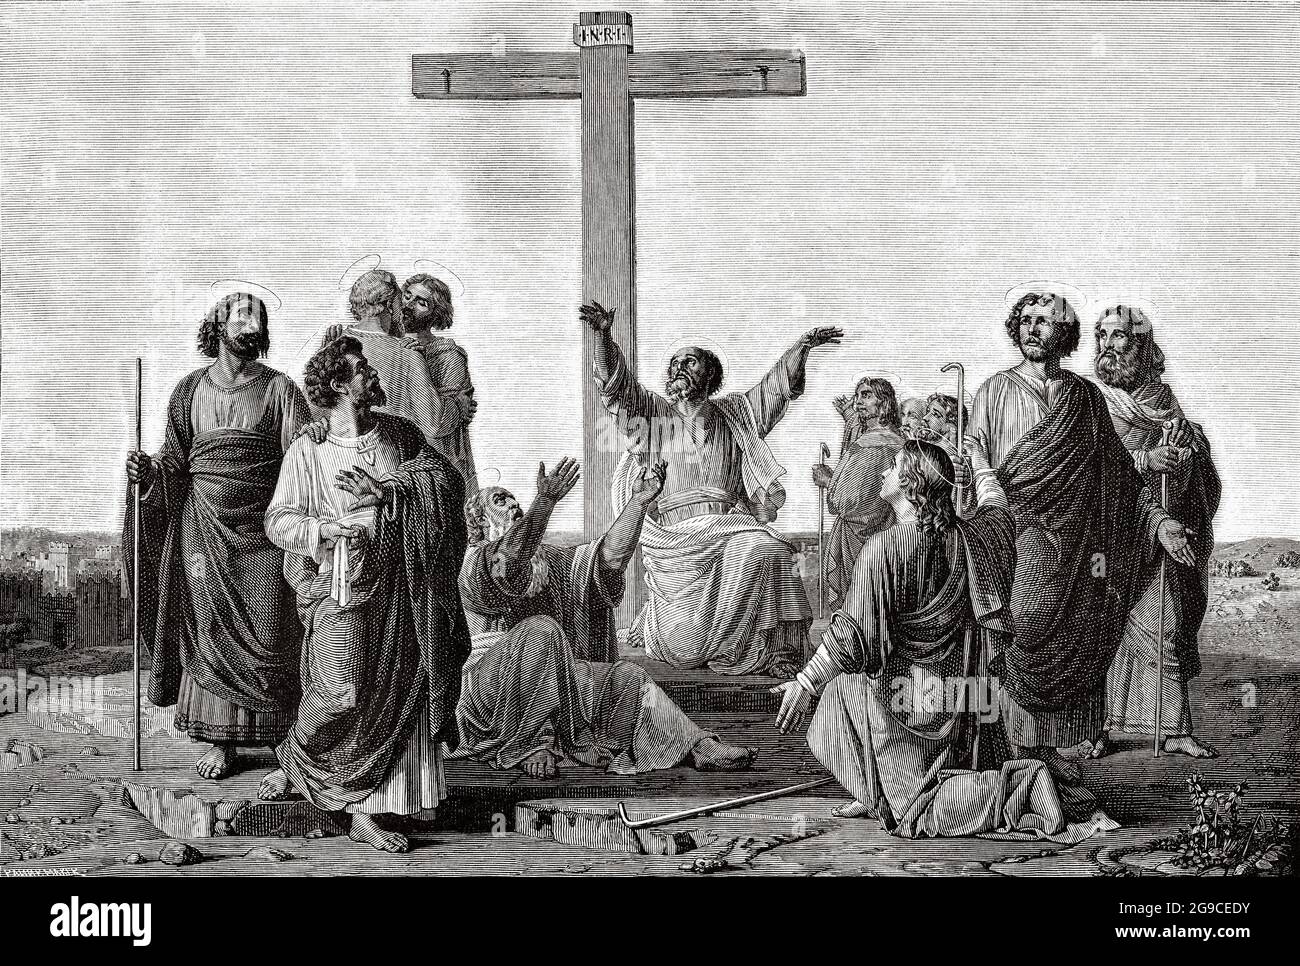 Die Mission der Apostel. Die Apostel versammelten sich am Fuße des Kreuzes getrennt, um den Nationen das Evangelium zu predigen. Alte Illustration von Jesus Christus aus dem 19. Jahrhundert von Veuillot 1881 Stockfoto